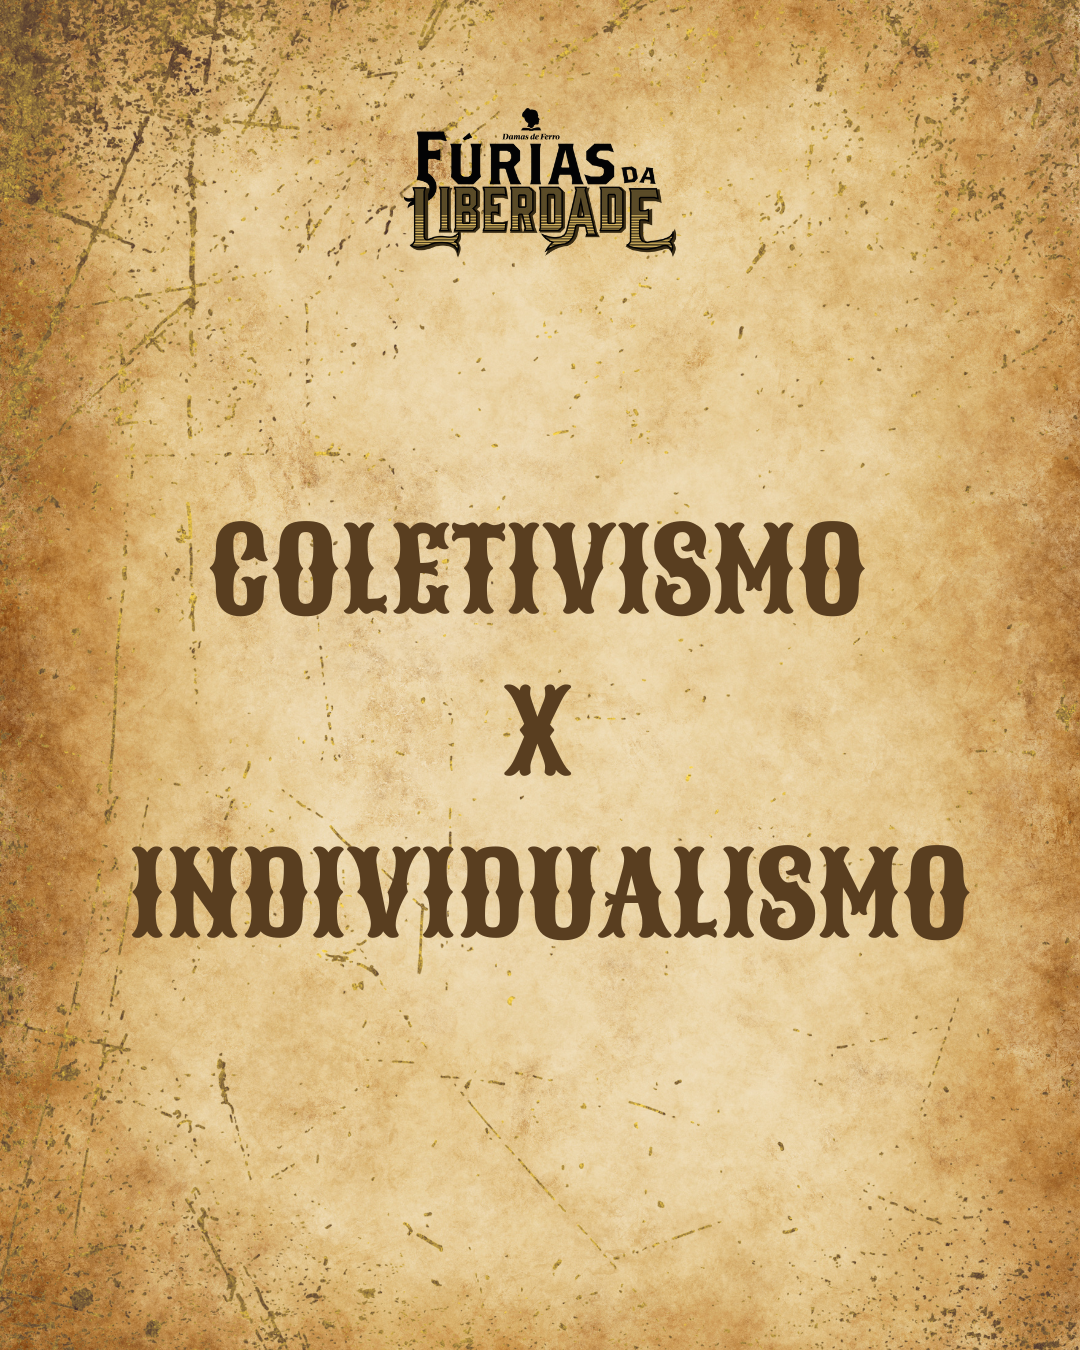 Coletivismo x Individualismo (5)